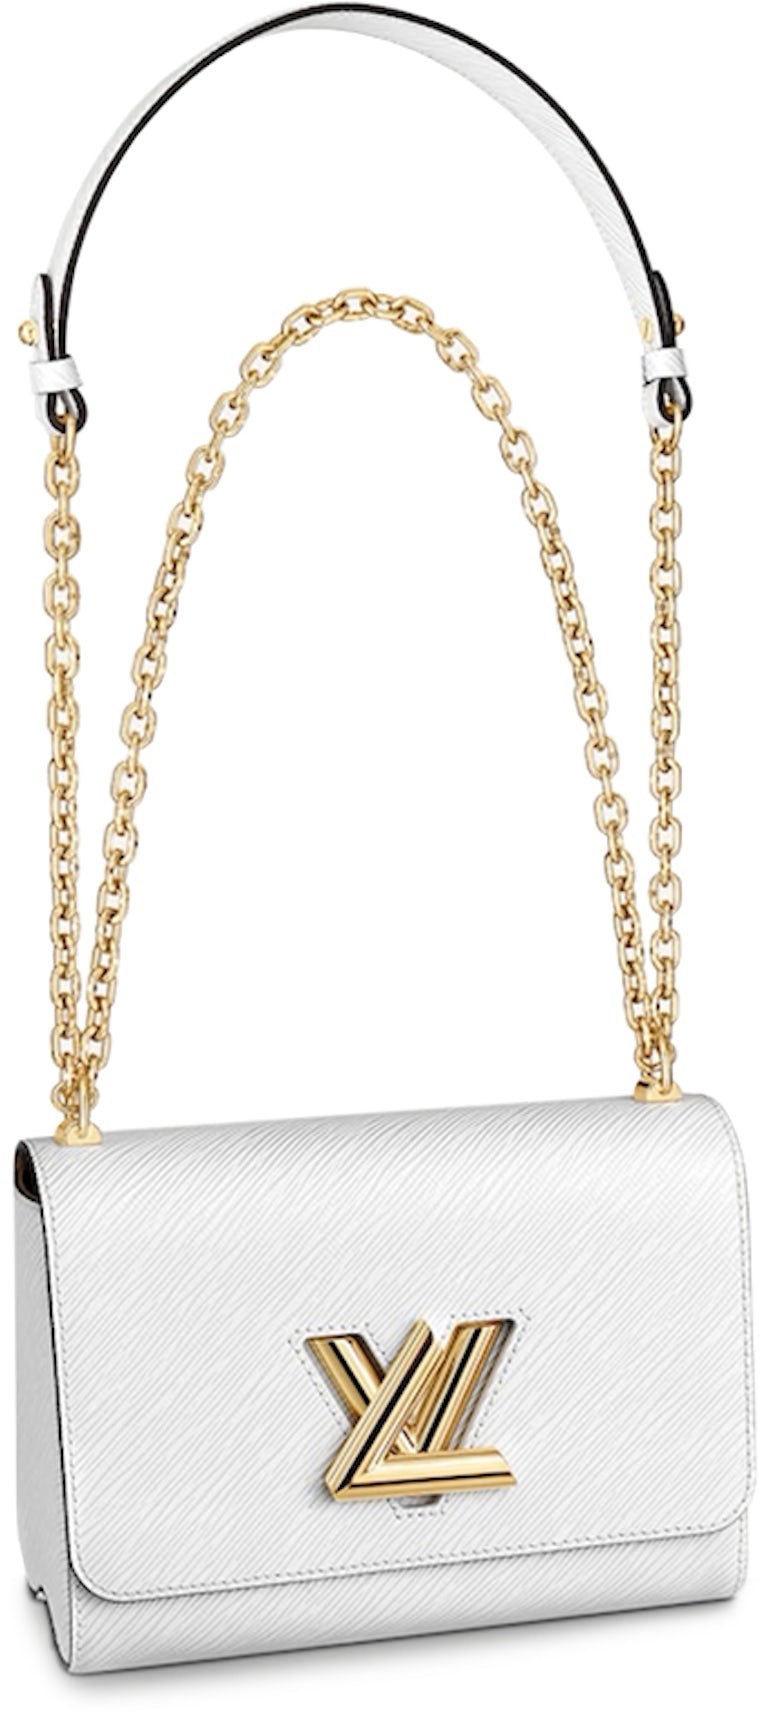 Louis Vuitton - Twist mm Chain Bag - Indigo - Leather - Women - Luxury